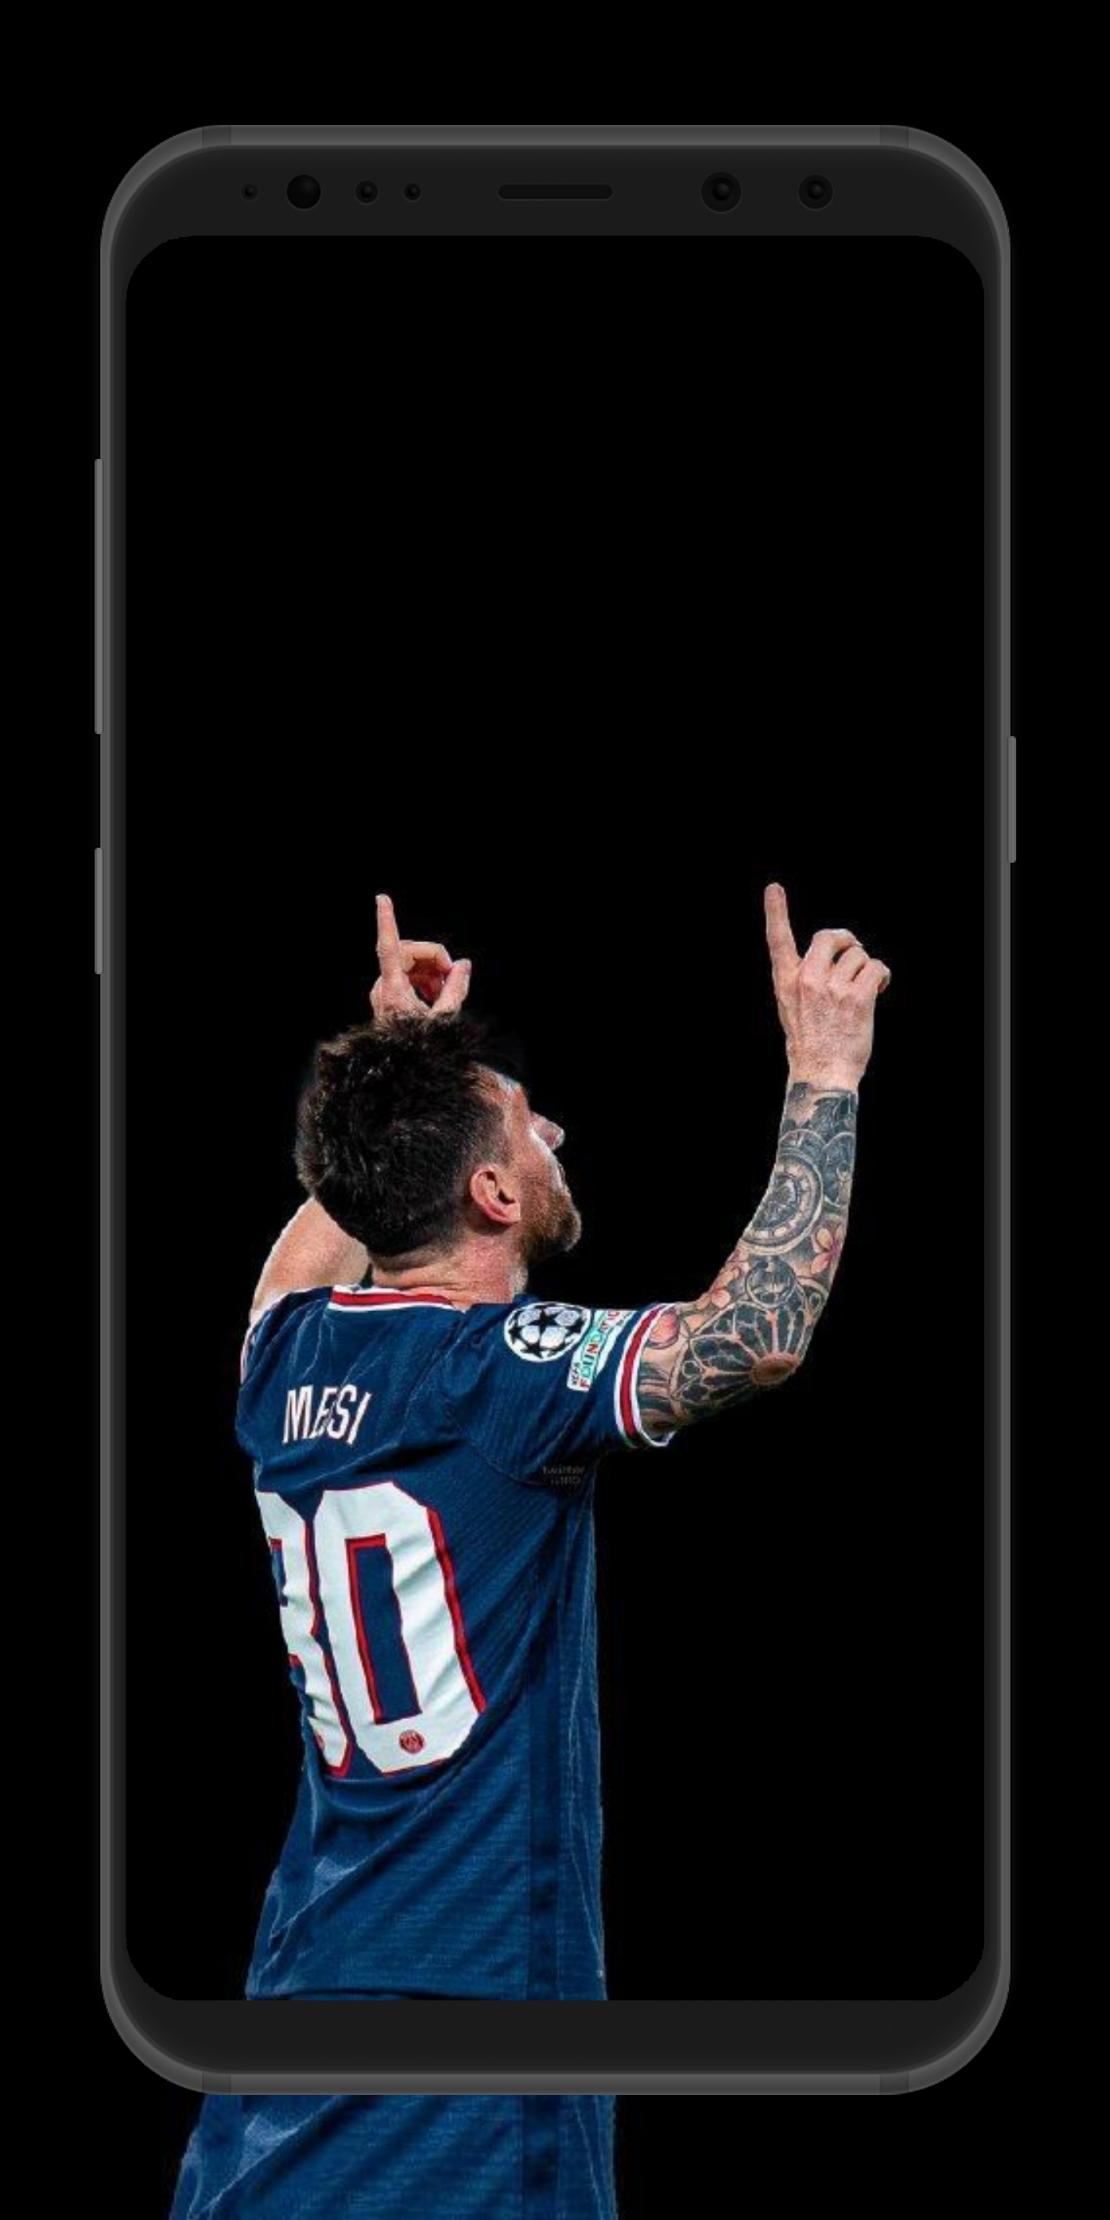 Messi Psg Wallpaper APK là một ứng dụng hoàn hảo cho những người yêu thích ngôi sao bóng đá này và CLB Paris Saint Germain. Với bộ sưu tập hình nền đẹp và ấn tượng này, bạn sẽ được chiêm ngưỡng chân dung Messi tại CLB mới, và tận hưởng trải nghiệm tuyệt vời nhất khi trang trí màn hình điện thoại của bạn.